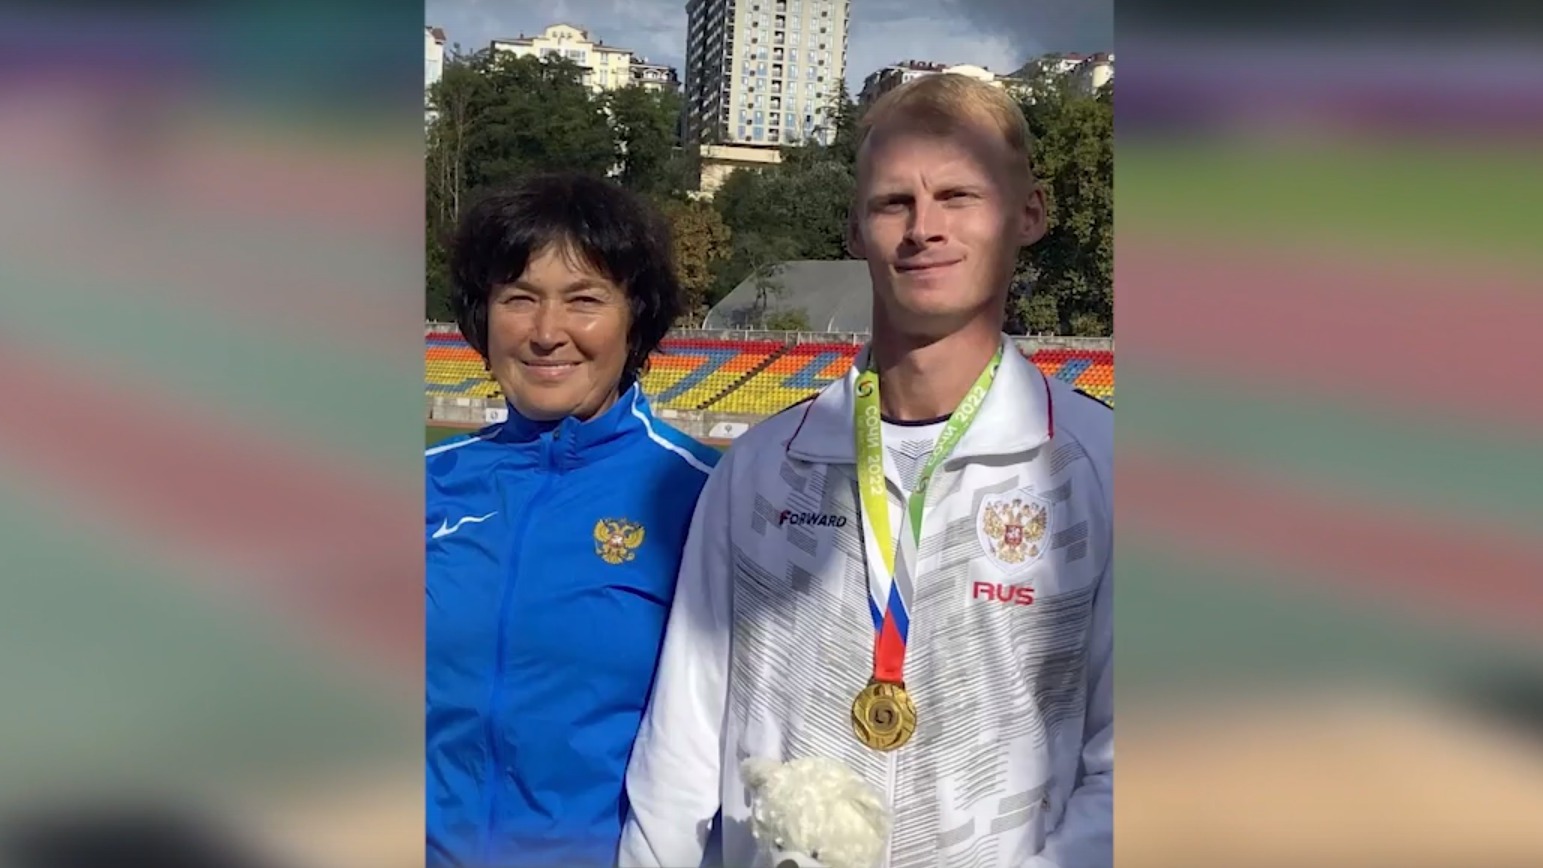 Спортсмен из Пермского края установил новый мировой рекорд в прыжках в длину